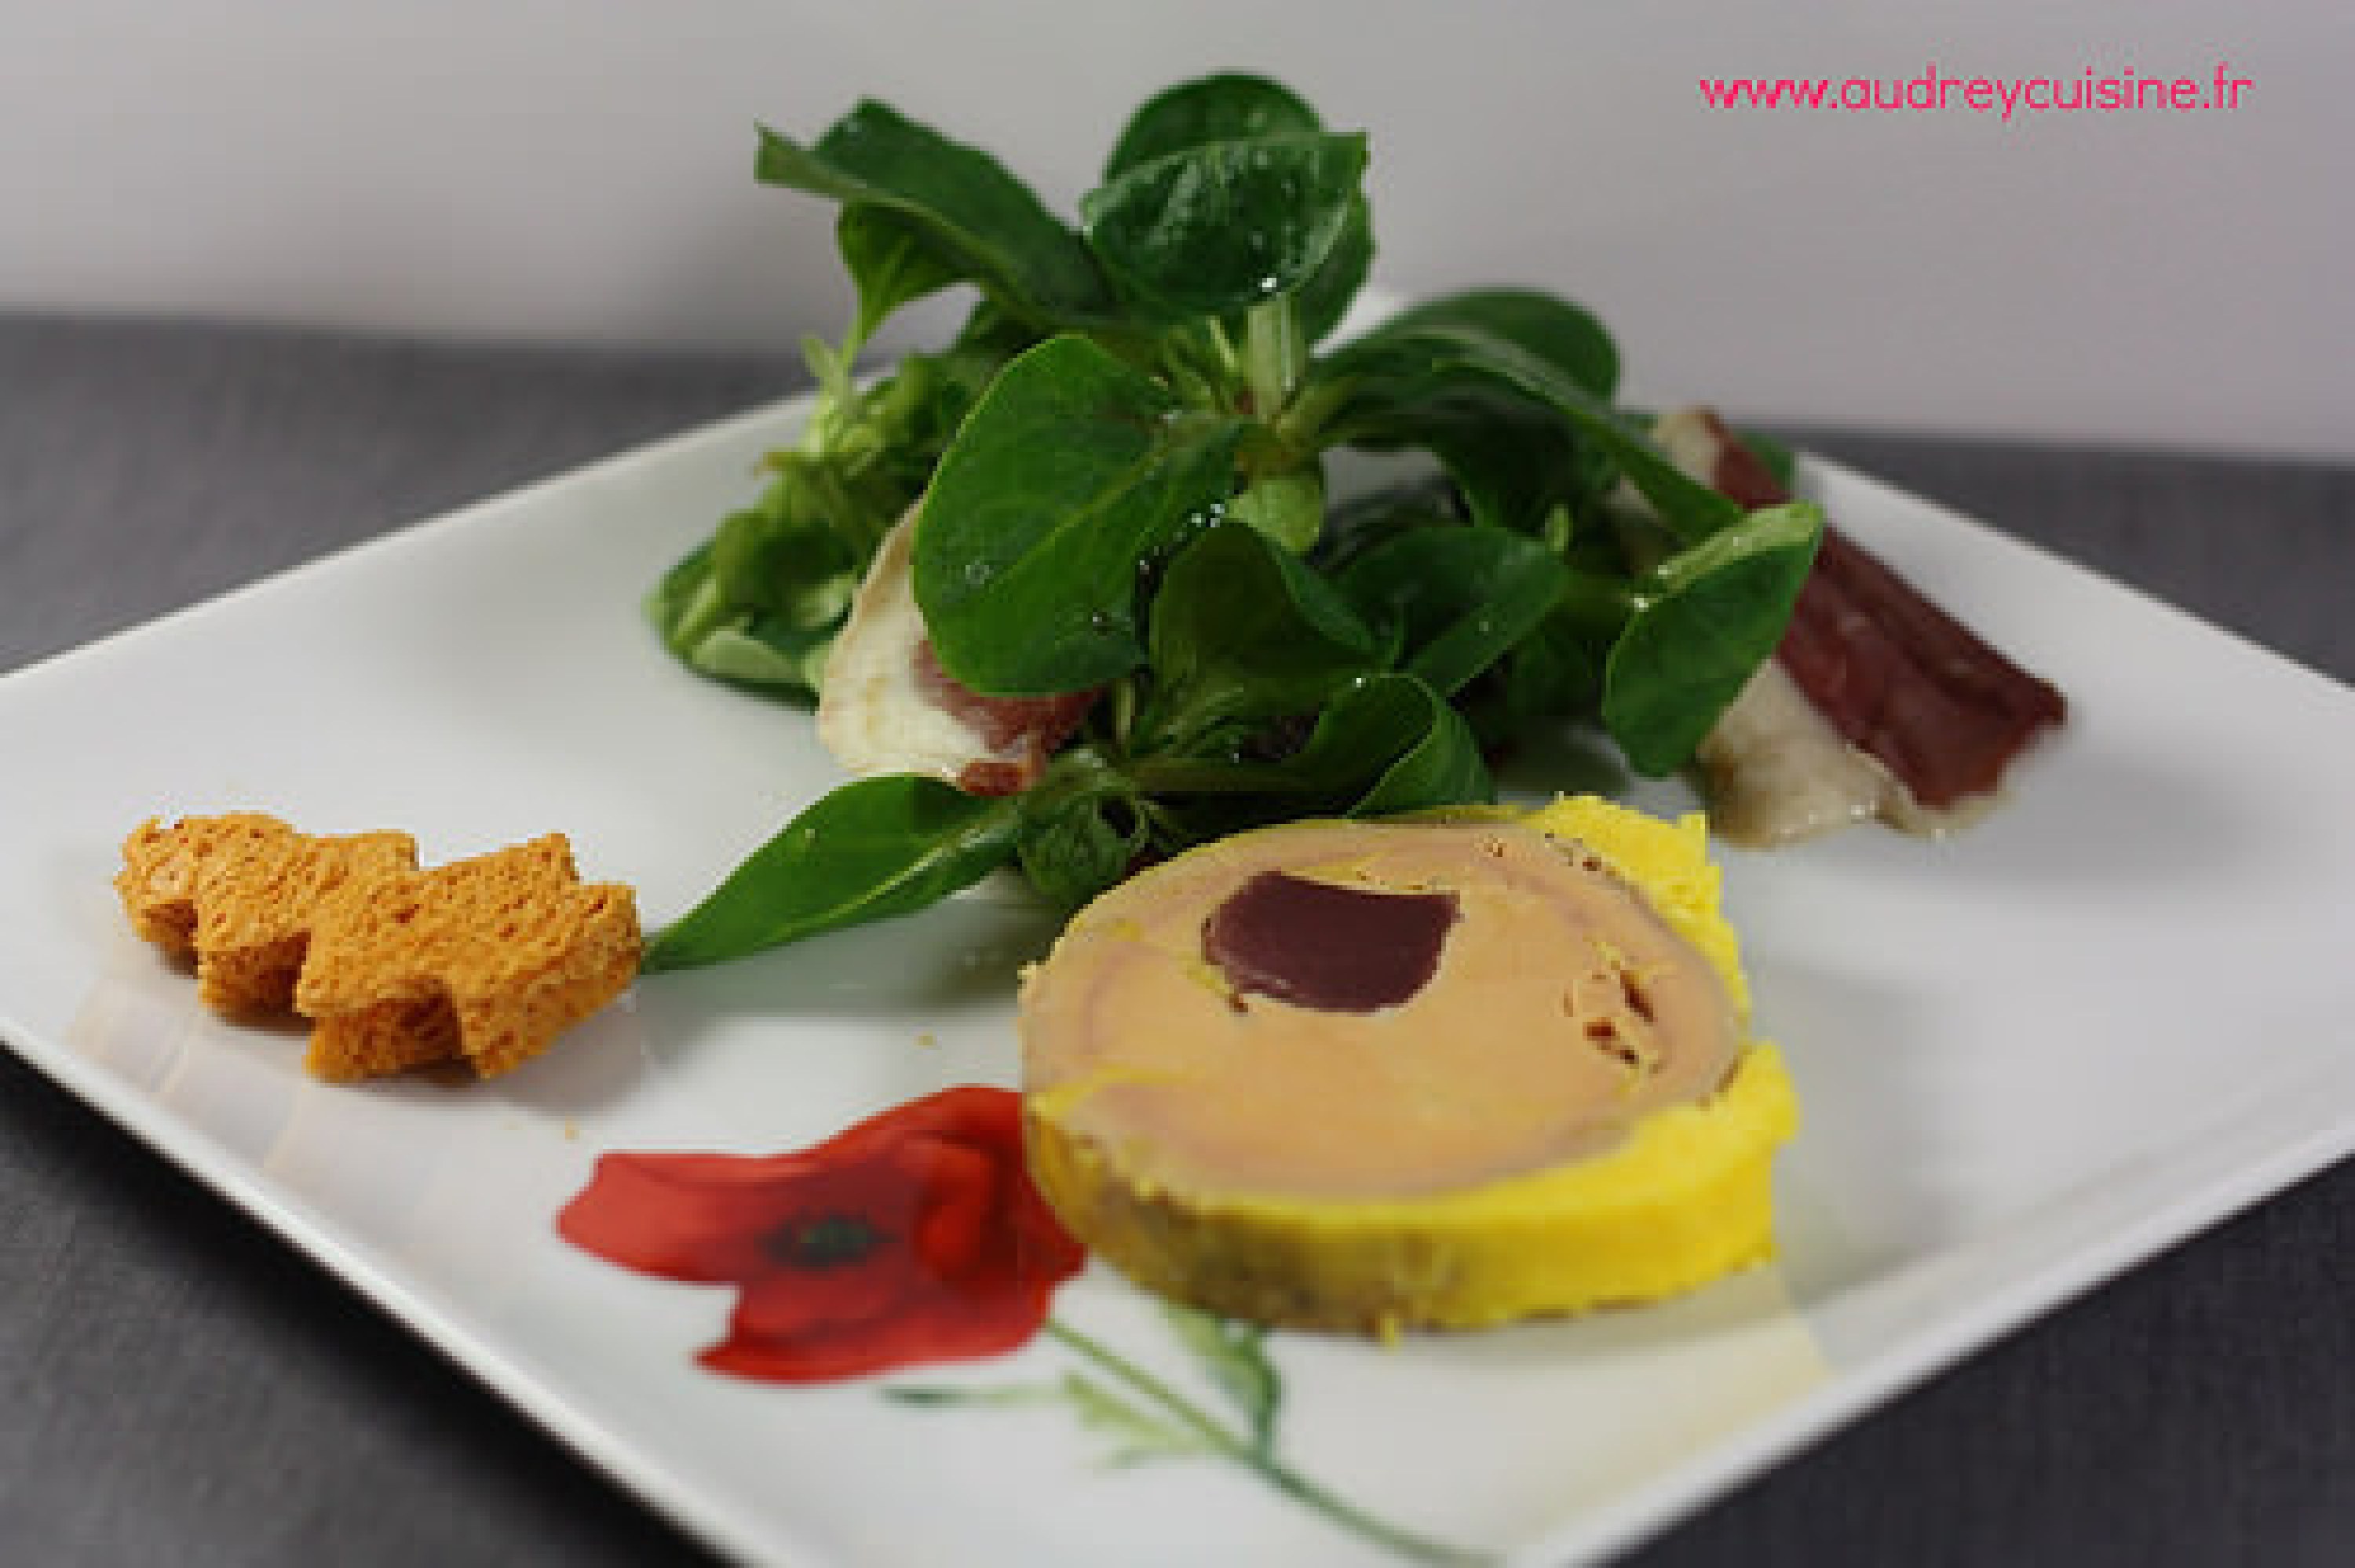 Recette du Foie gras de canard maison, farci aux gésiers confits